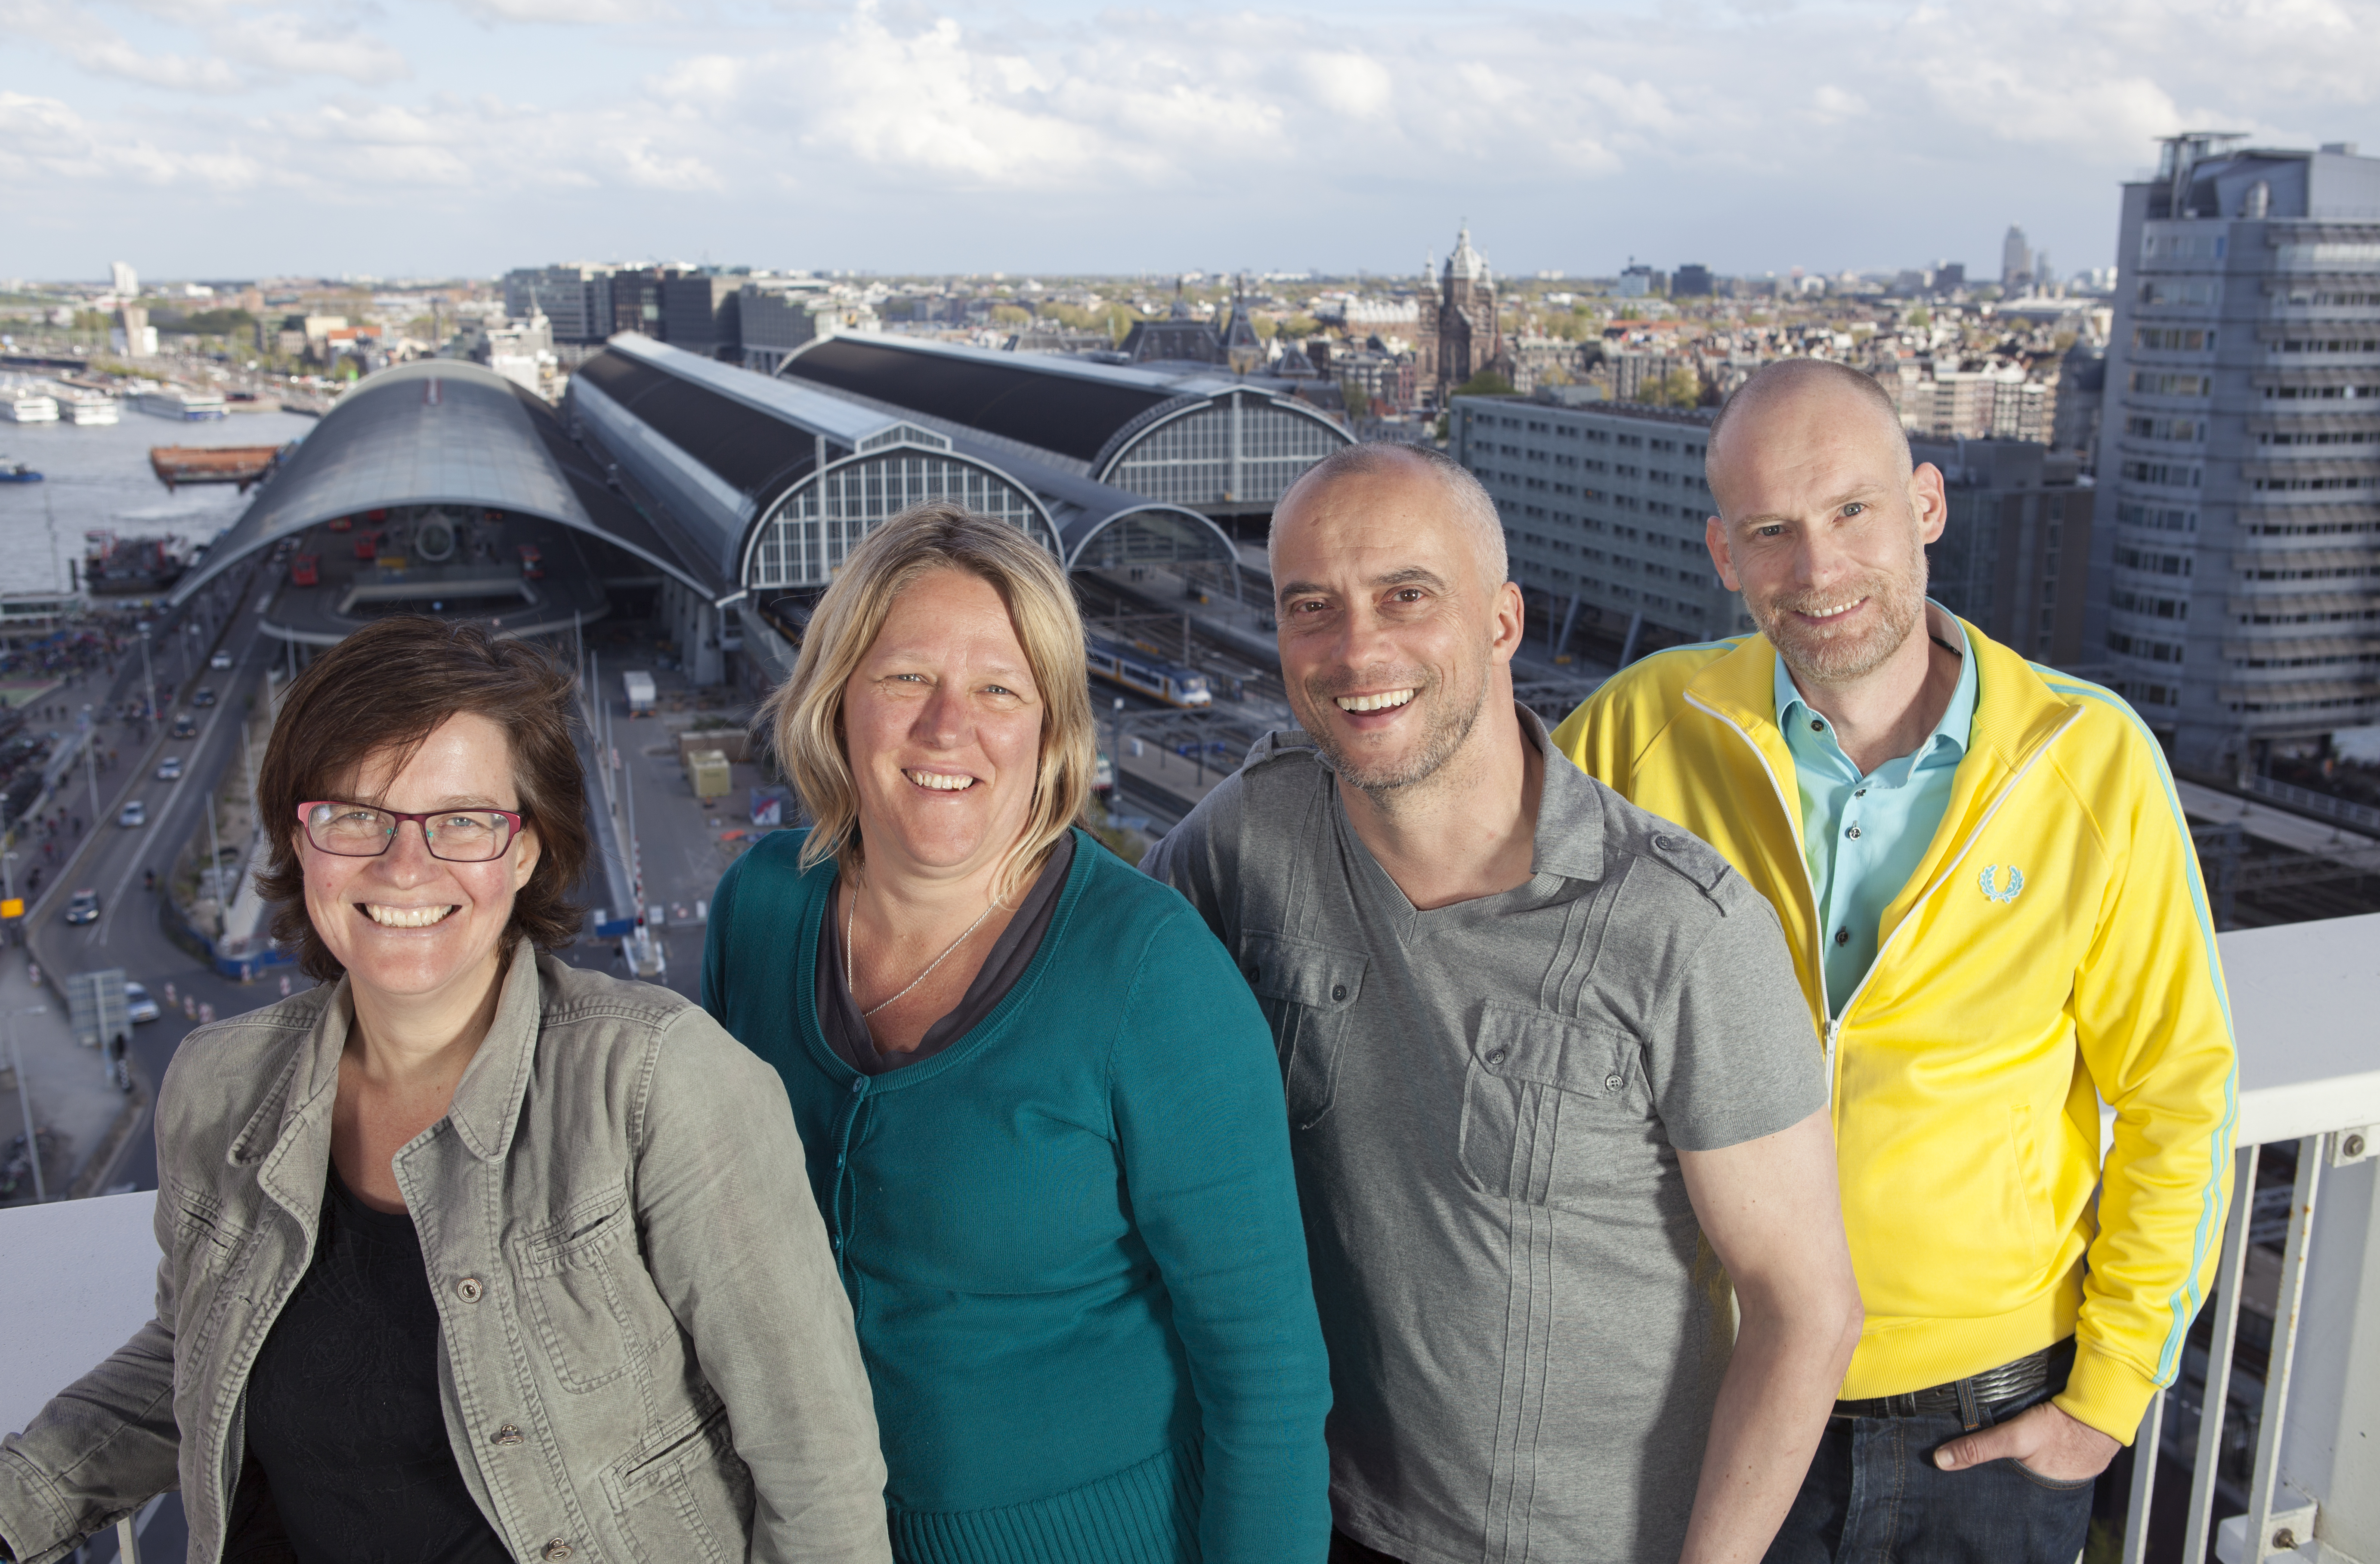 The Foundation Board From left to right: Renate Hartman, Karen Kraan, Jan Bouwens, Pieter Brokx